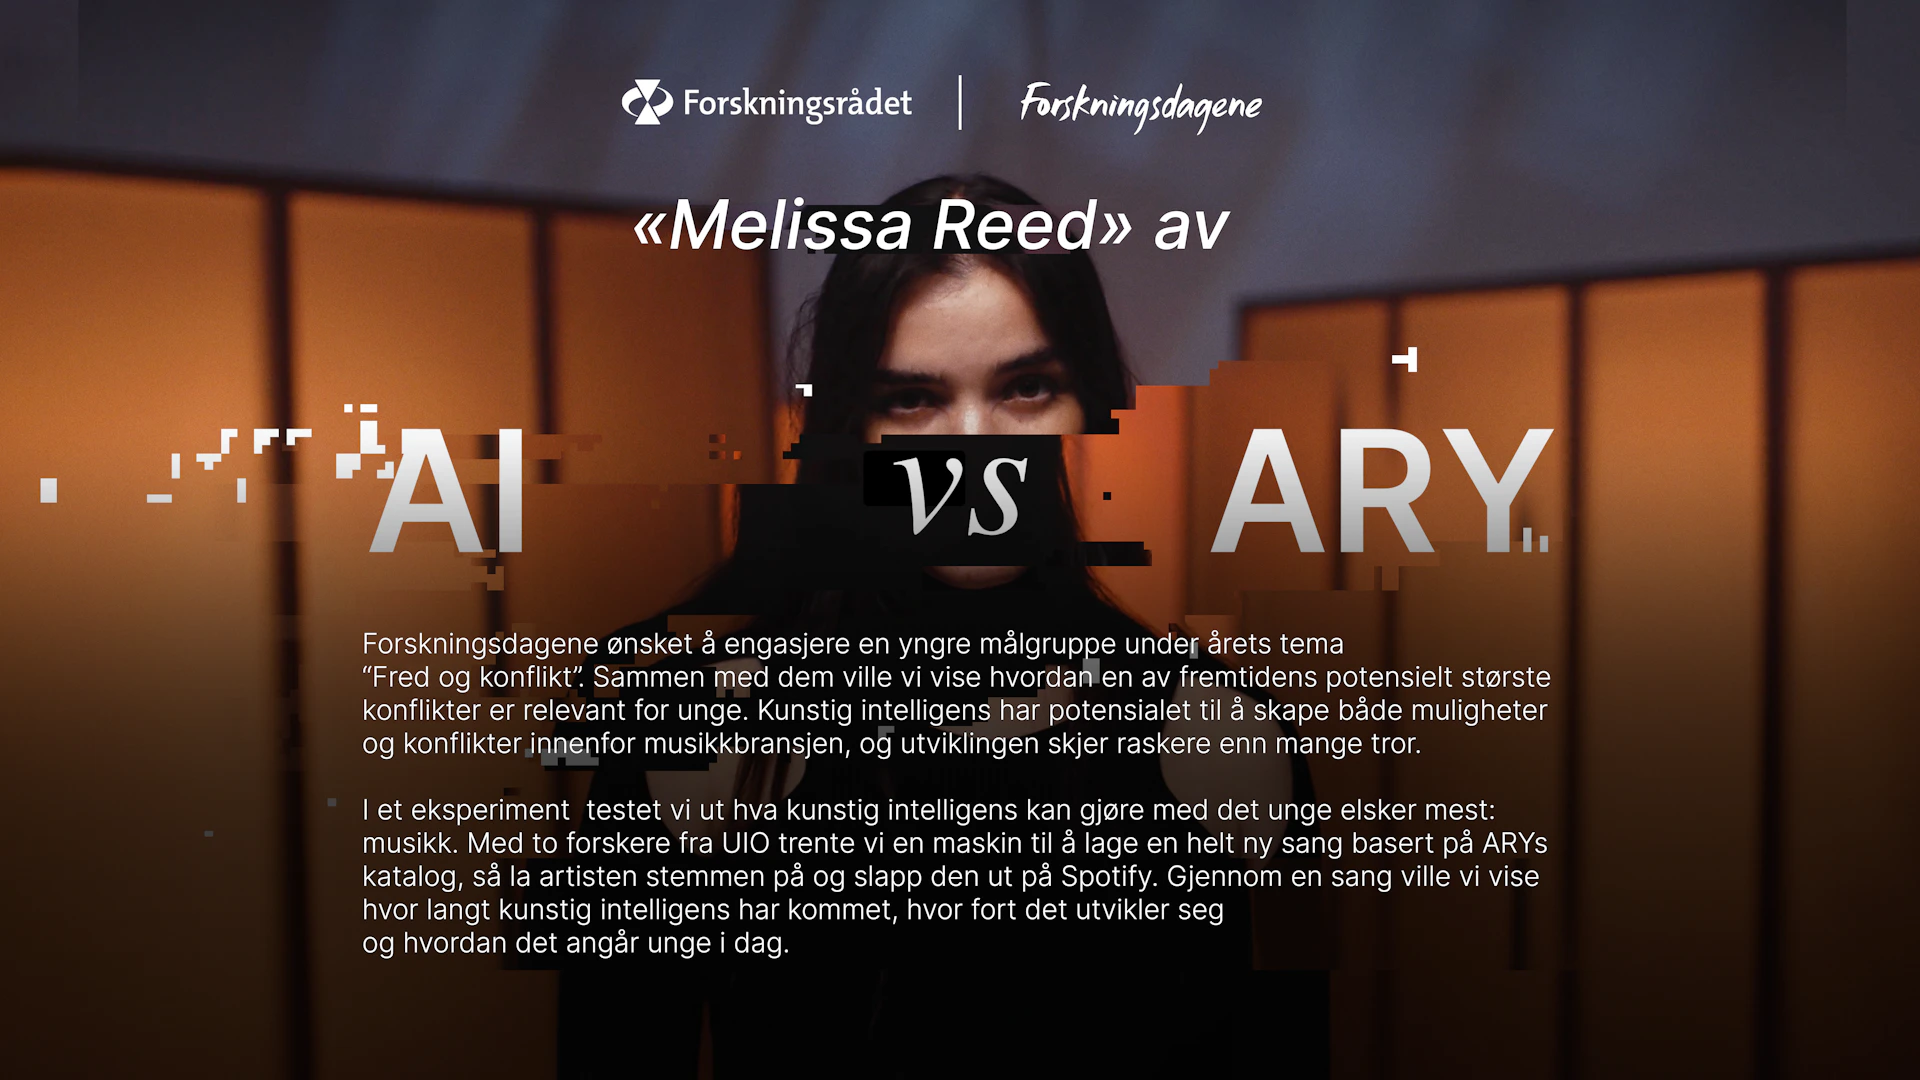 Yp Ajvn XG AI vs ARY2